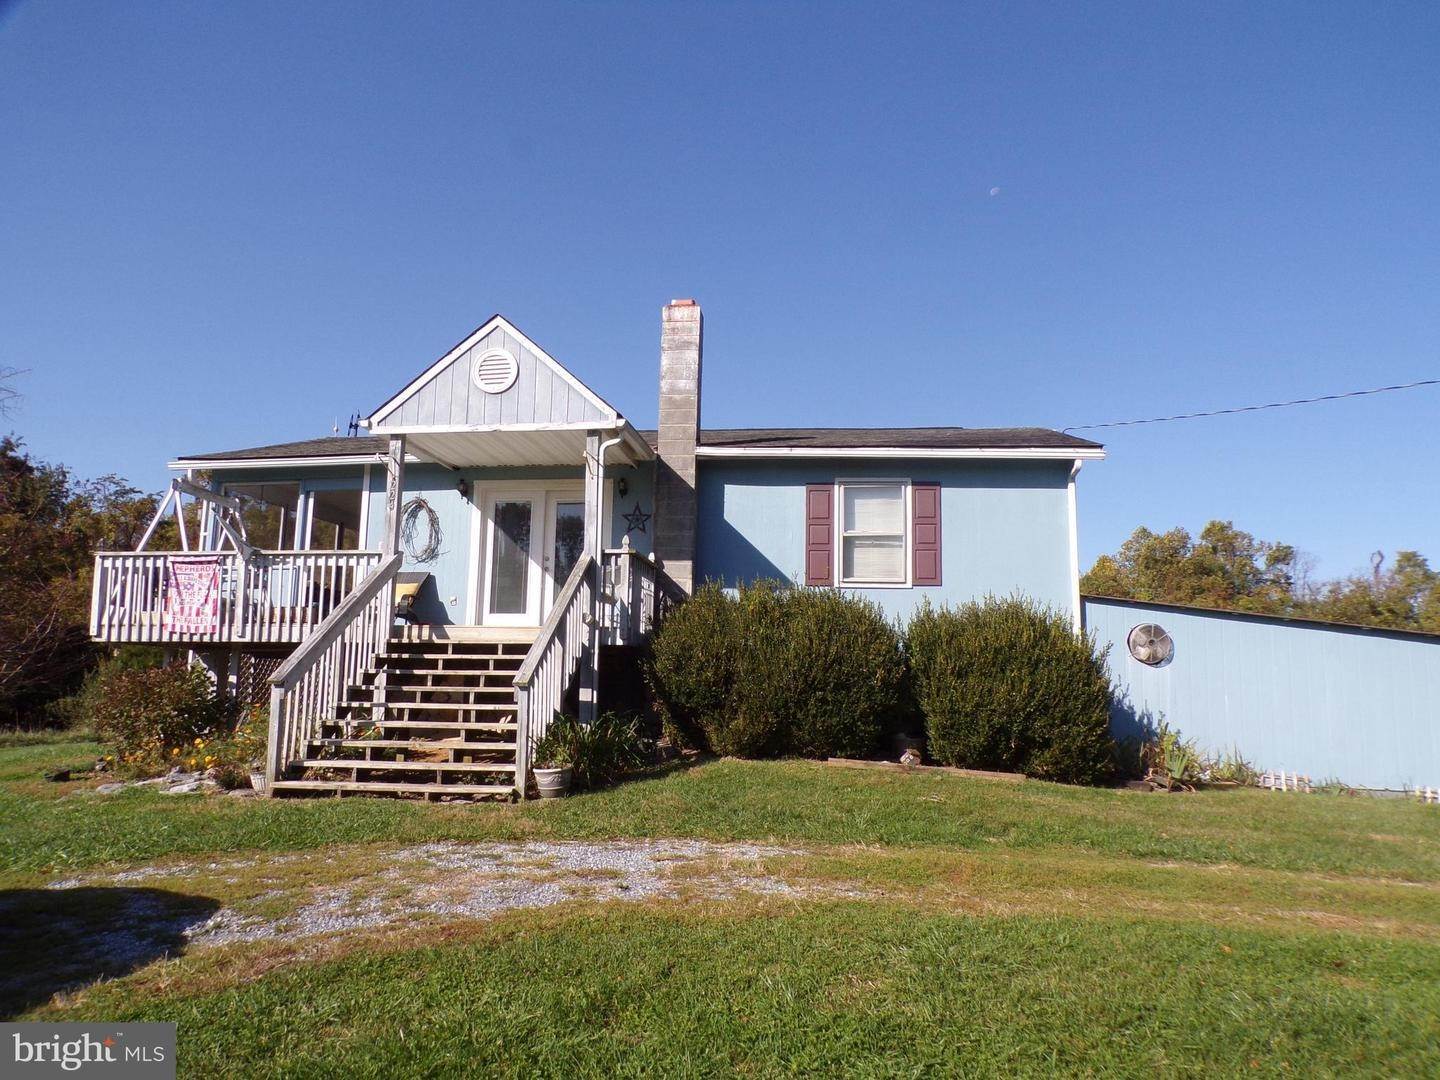 Single Family Homes för Försäljning vid Harpers Ferry, West Virginia 25425 Förenta staterna